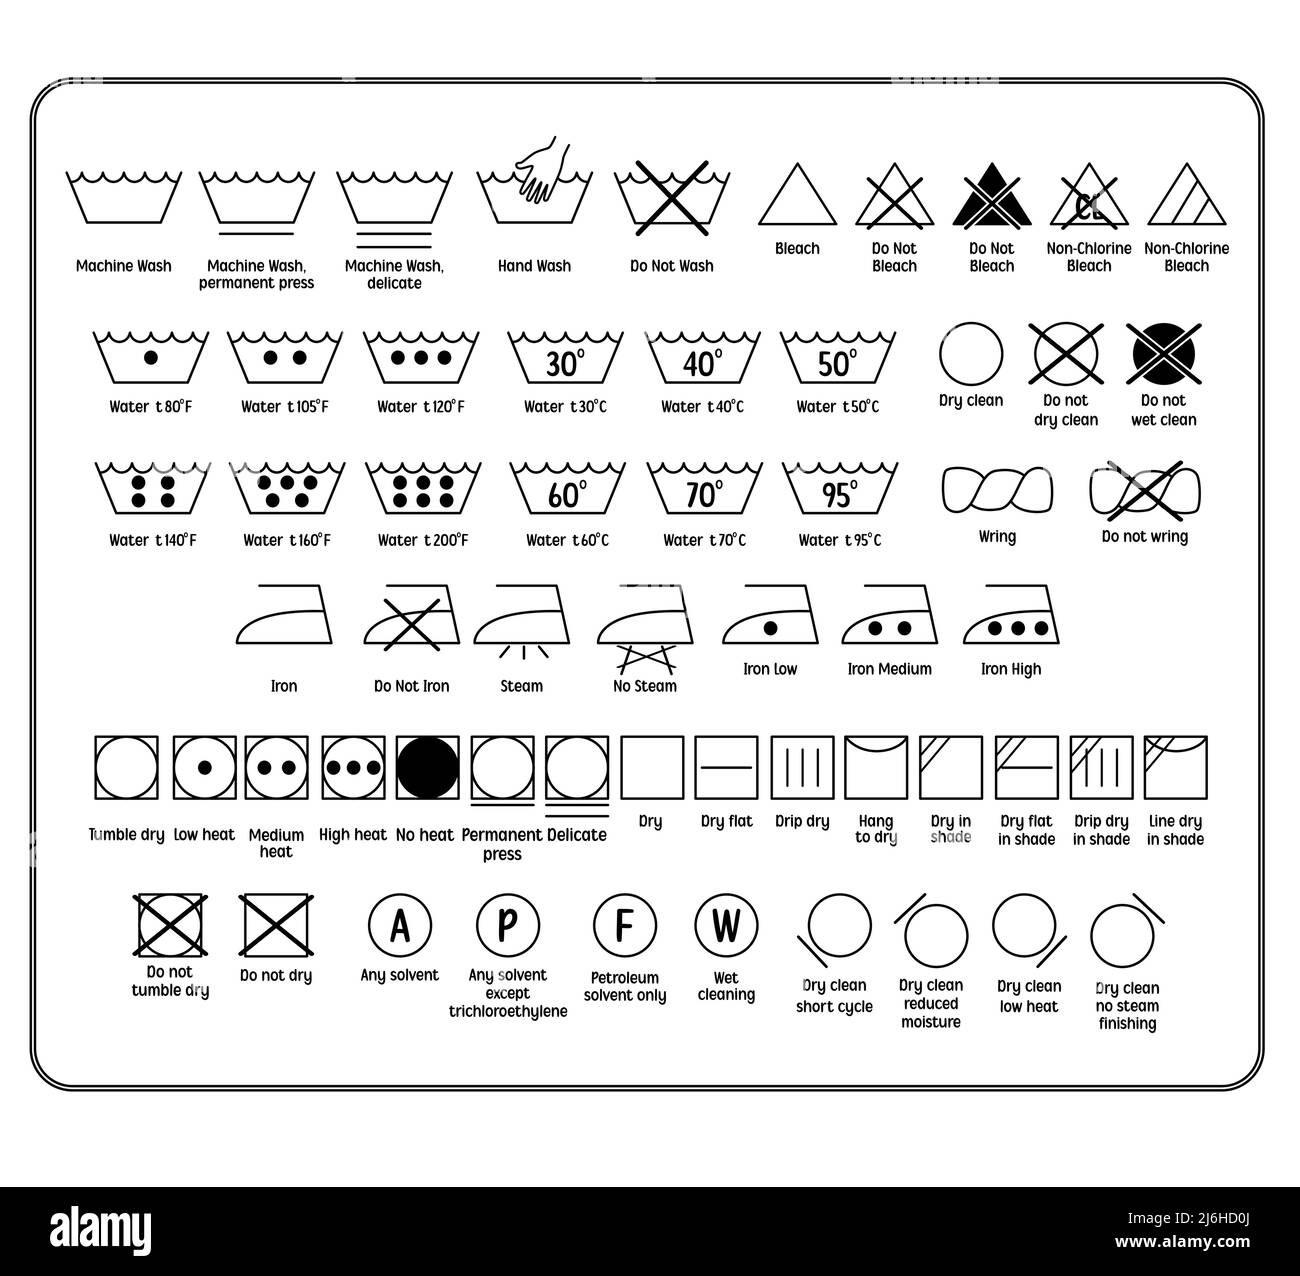 Symboles de lavage Banque de photographies et d'images à haute résolution -  Alamy